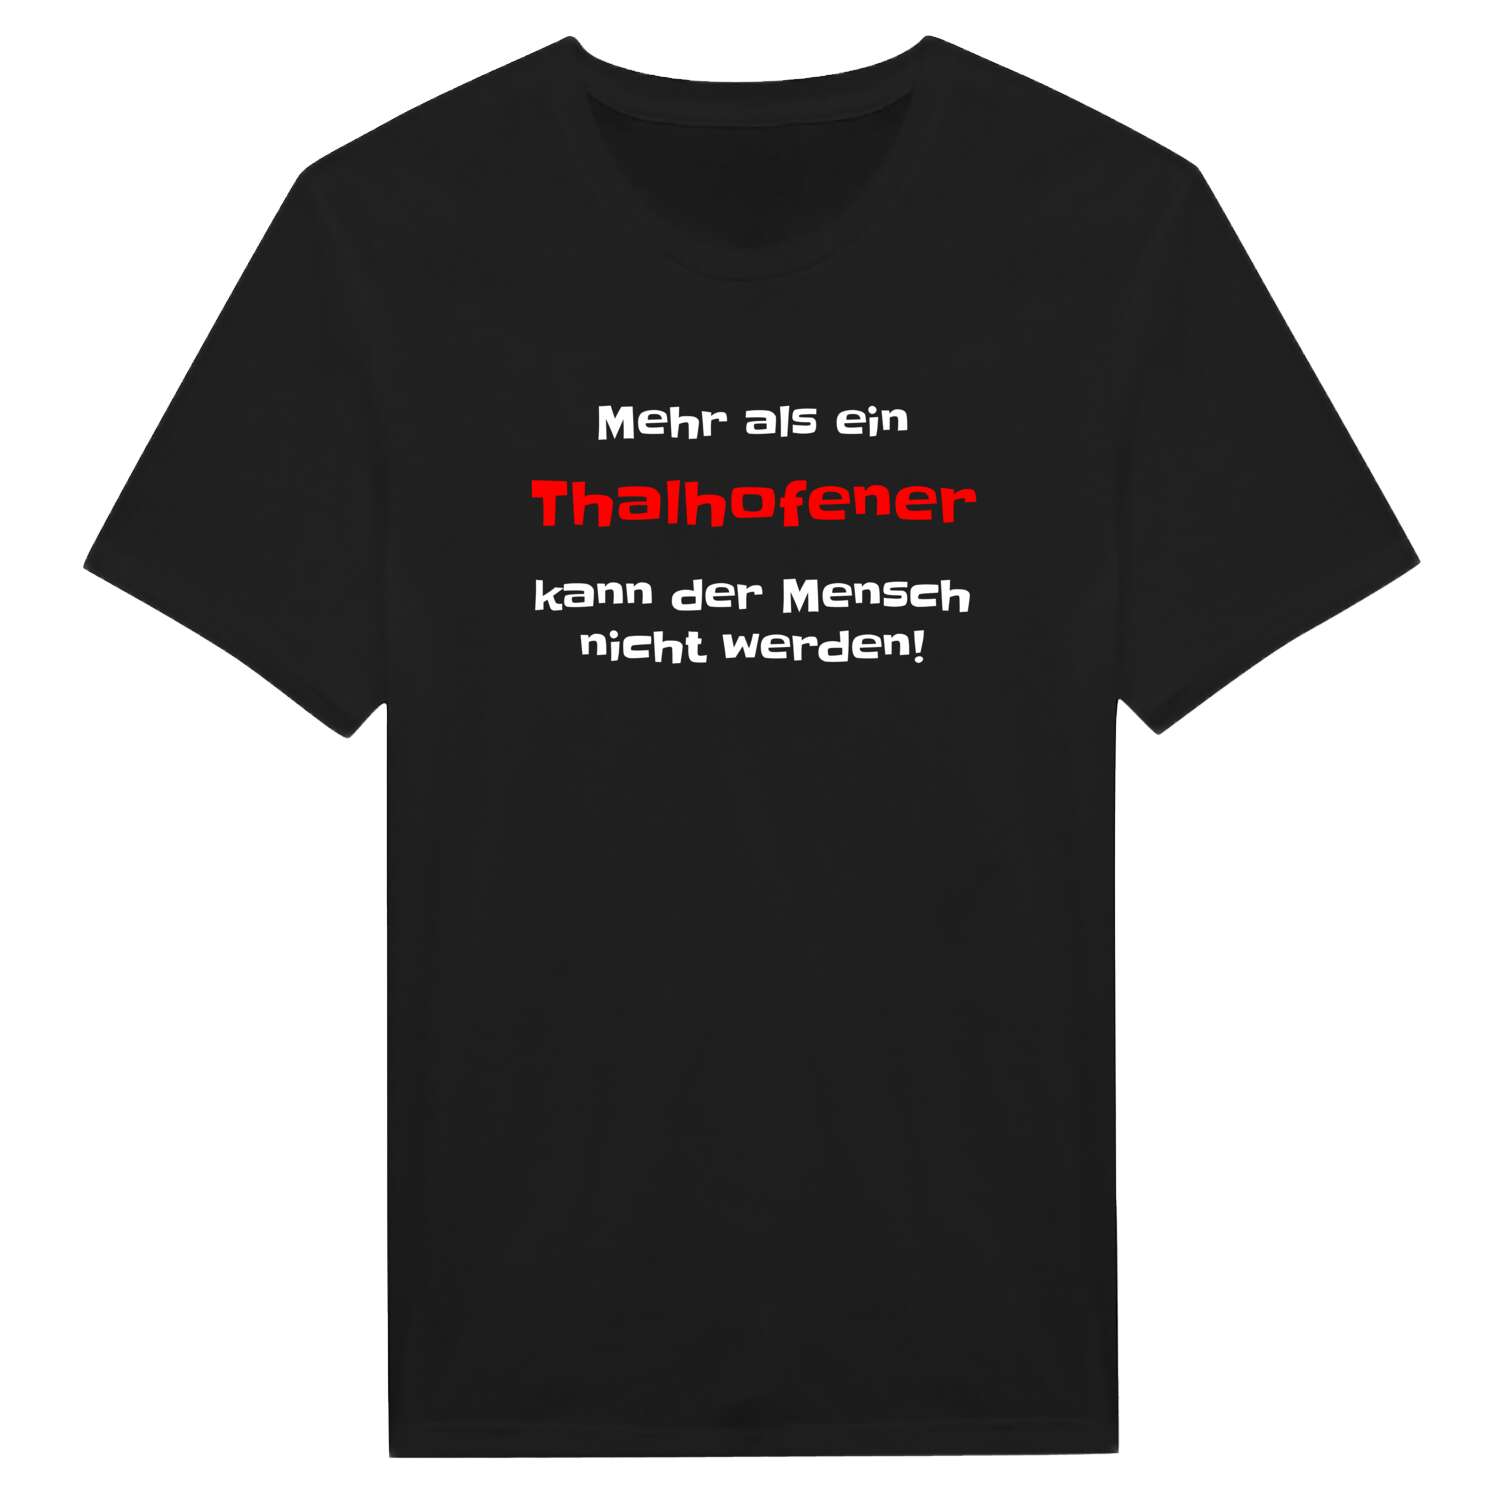 Thalhofen T-Shirt »Mehr als ein«